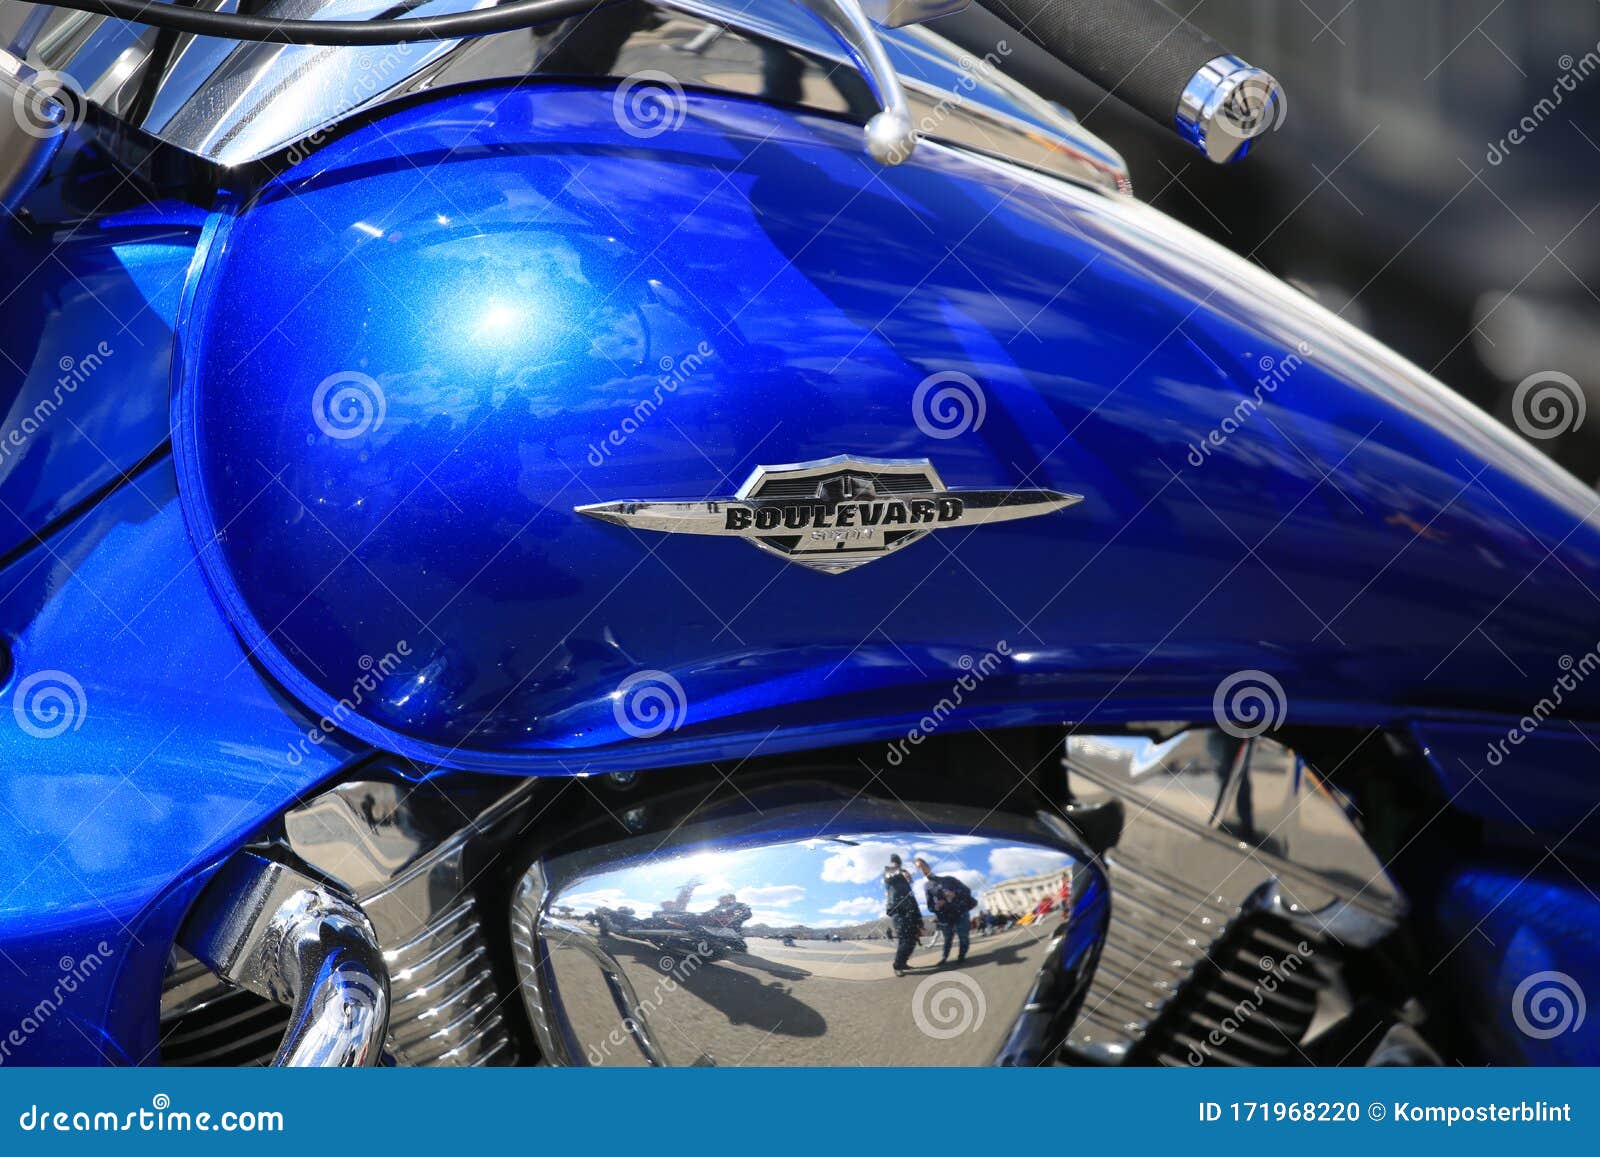 Tanque De Combustível De Moto Azul Suzuki Boulevard Com Logotipo. Vestiário  Imagem Editorial - Imagem de capacetes, harley: 171968220